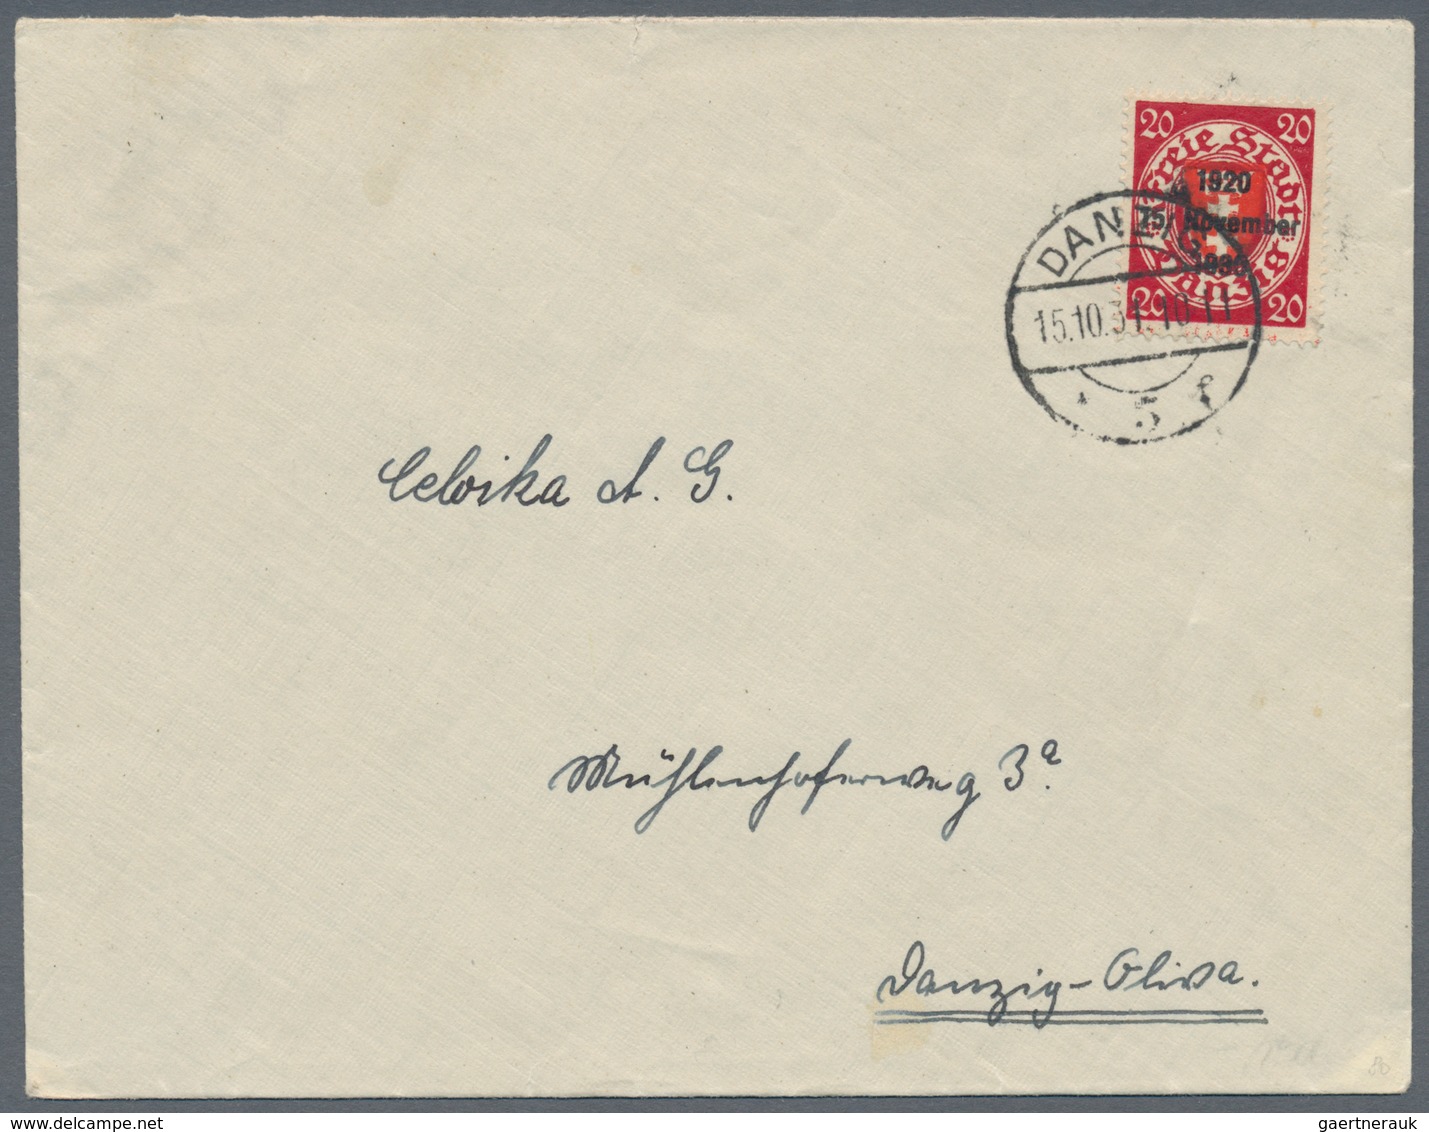 Danzig: 1875/1943, vielseitige Partie von ca. 135 Bedarfs-Briefen/Karten in guter Vielfalt ab einige